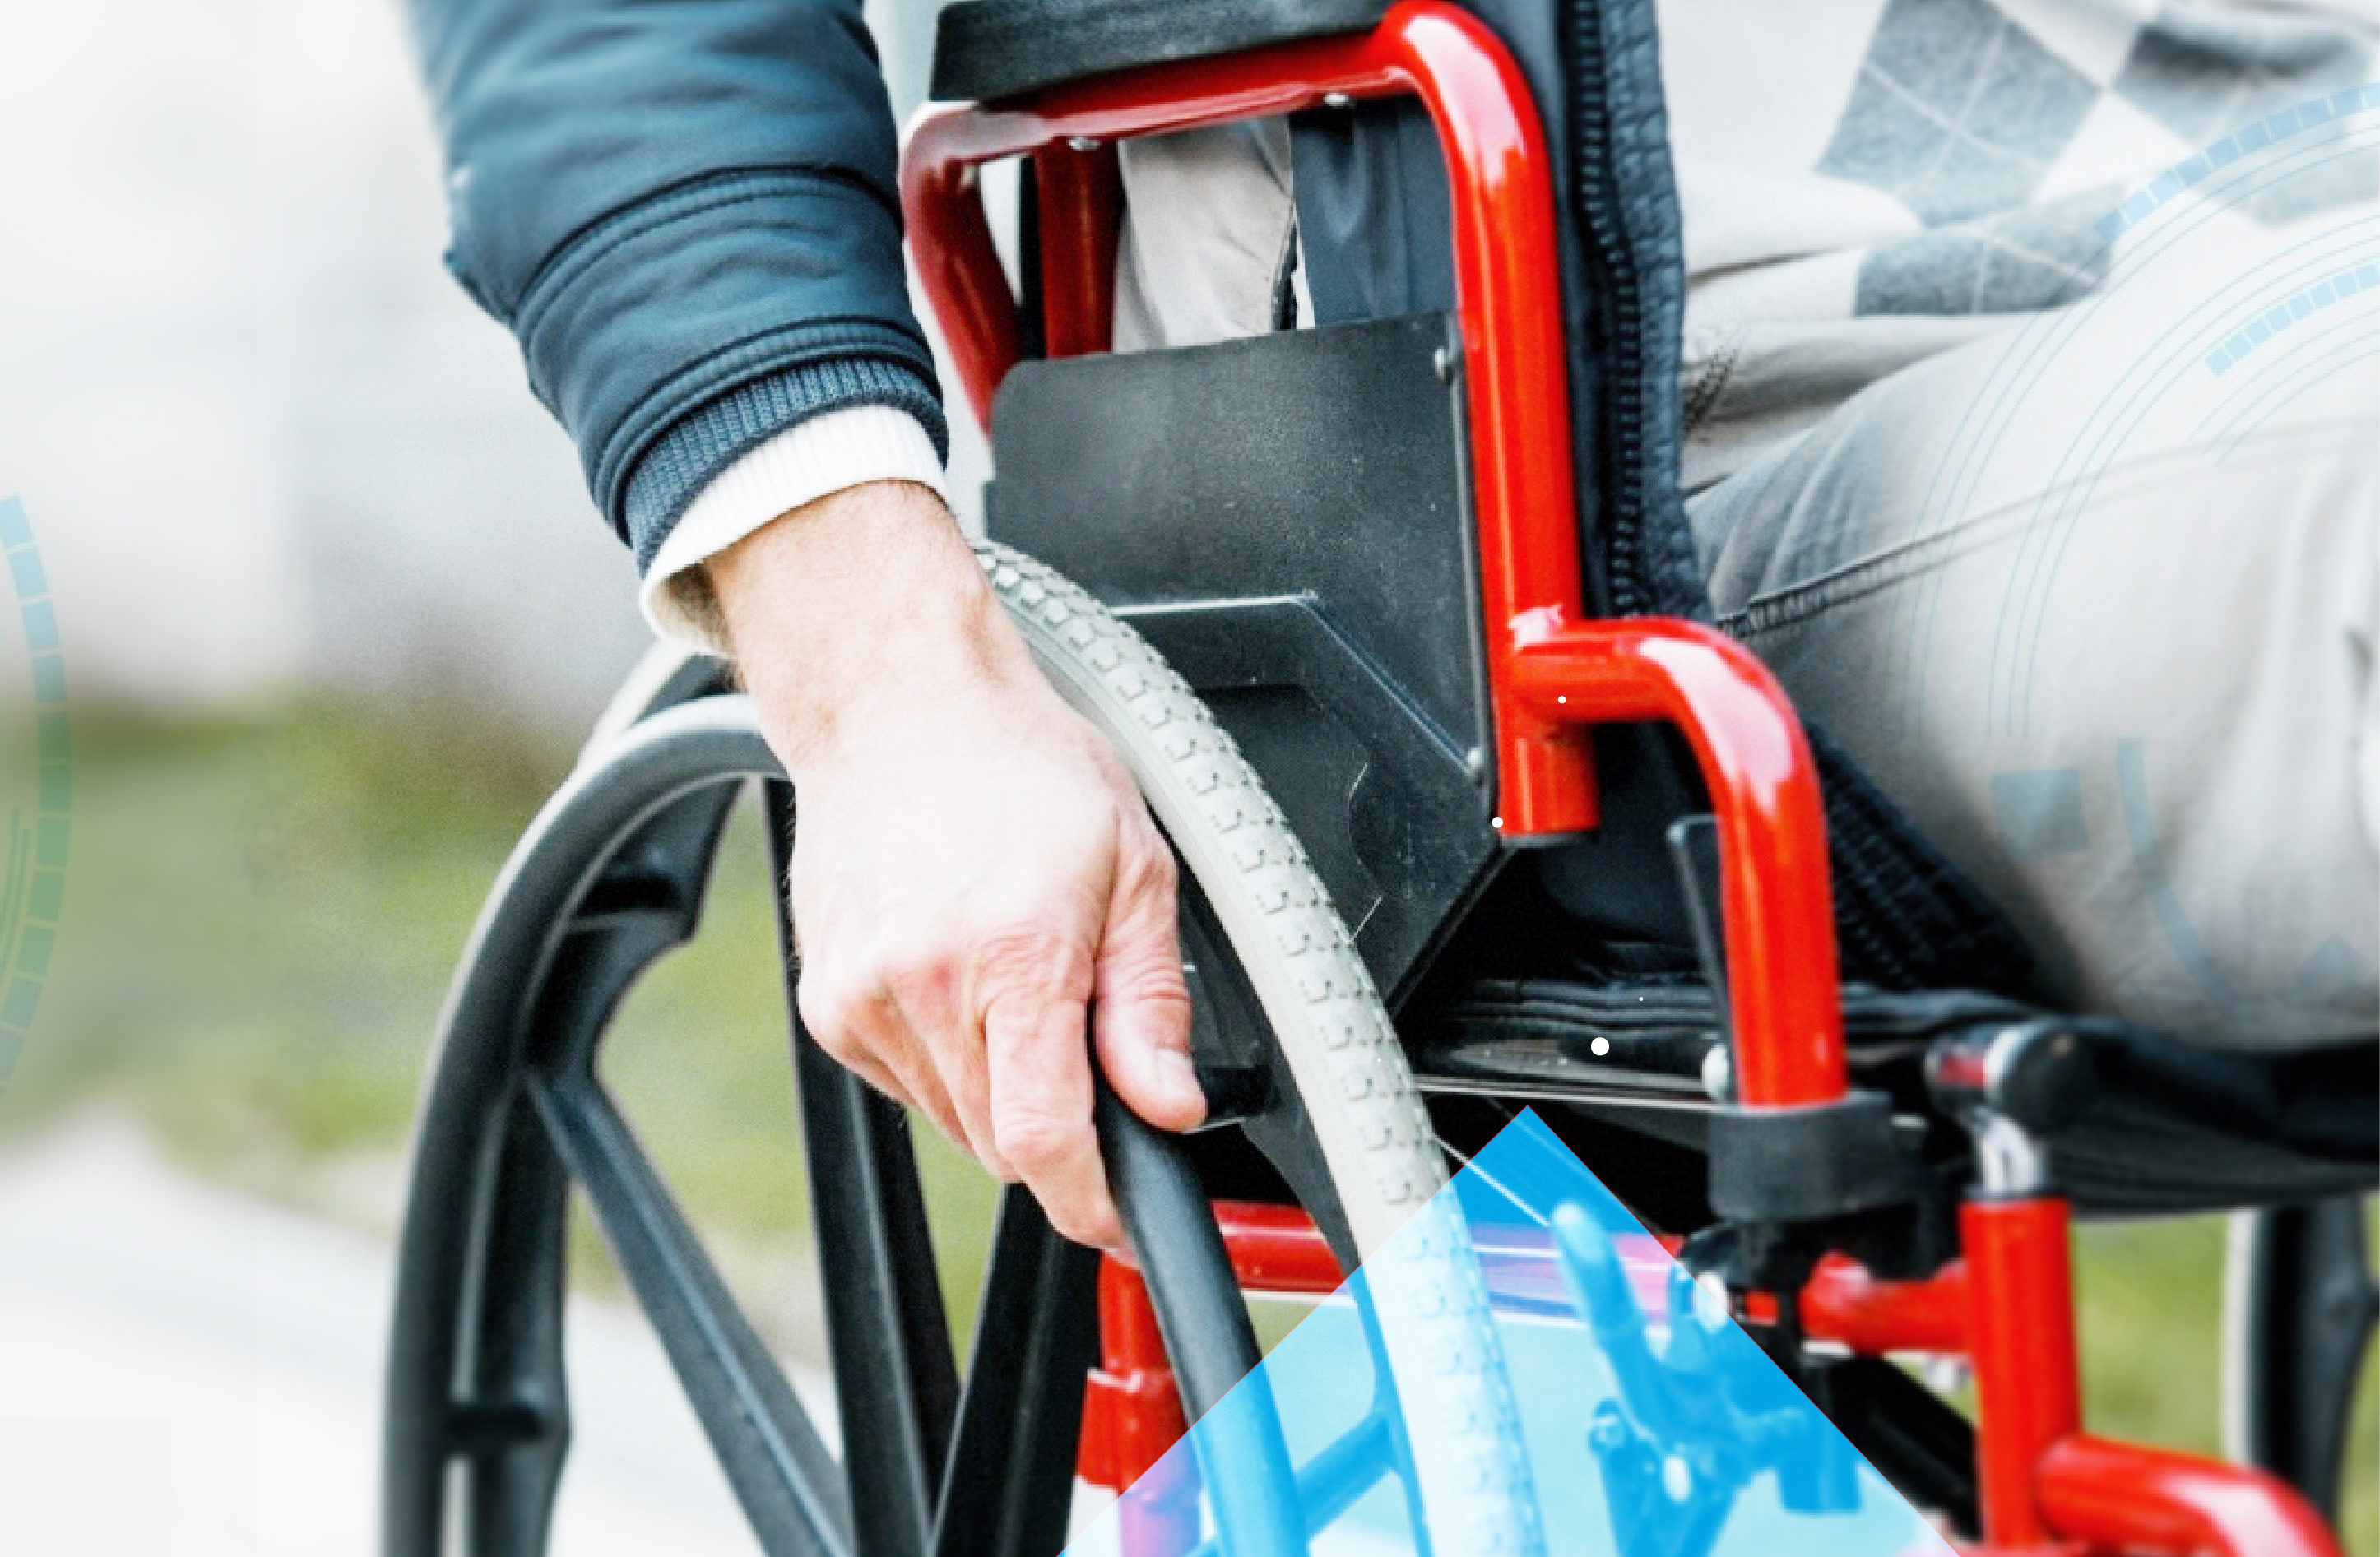 Дисабилити сайт для инвалидов. • • Кресло-коляска для инвалидов-колясочников. Коляска для инвалидов. Инвалид колясочник. Средства ТСР для инвалидов.